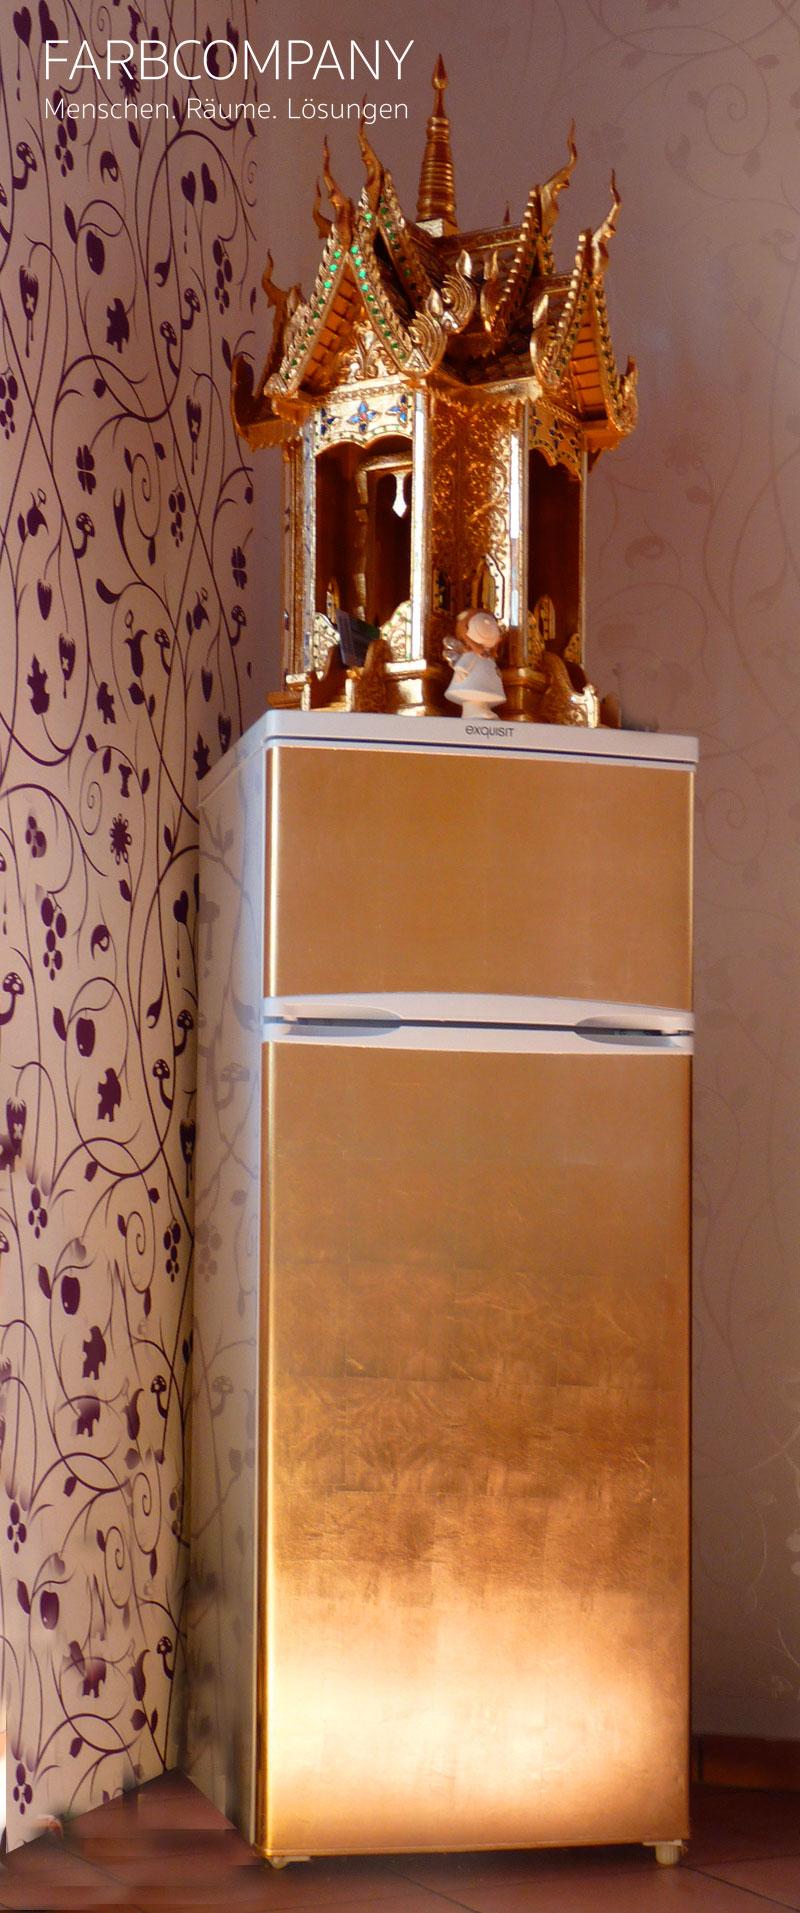 Blattgold auf Kühlschrank #blattgold ©Farbcompany/ Mike Schleupner